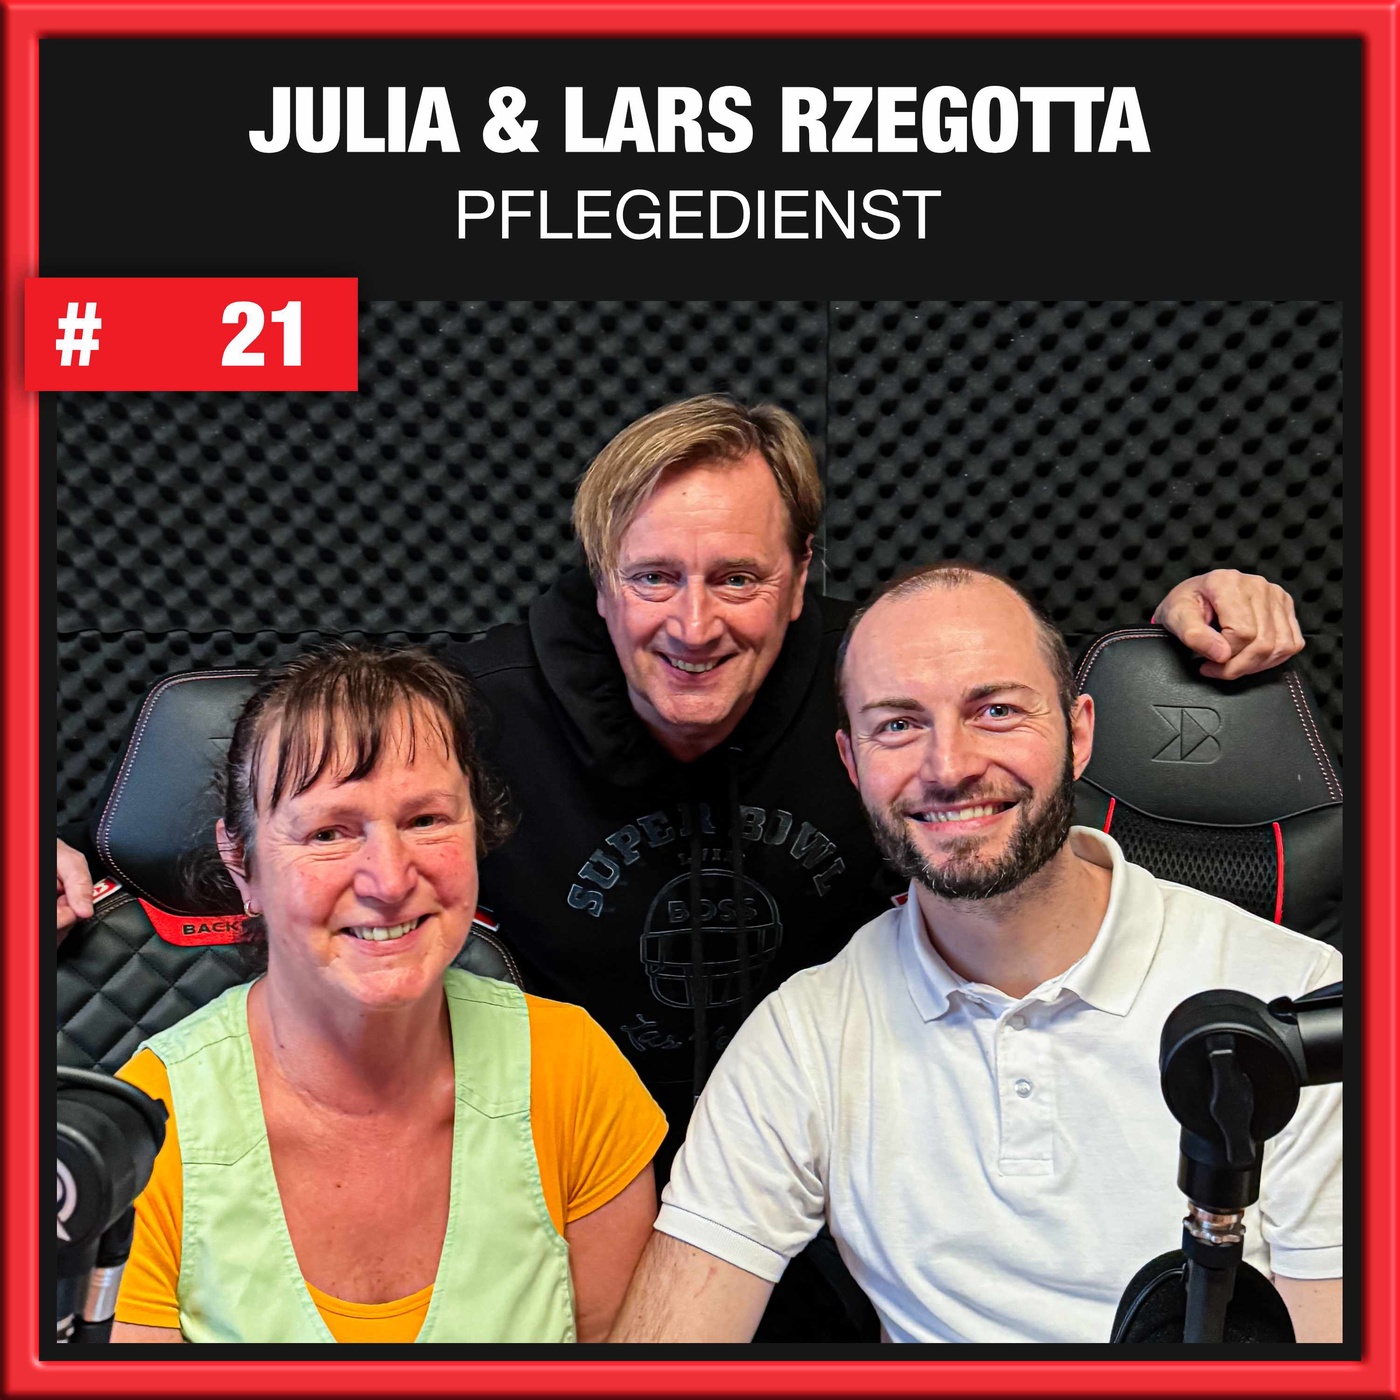 Pflegedienst Julia & Lars Rzegotta (#21)